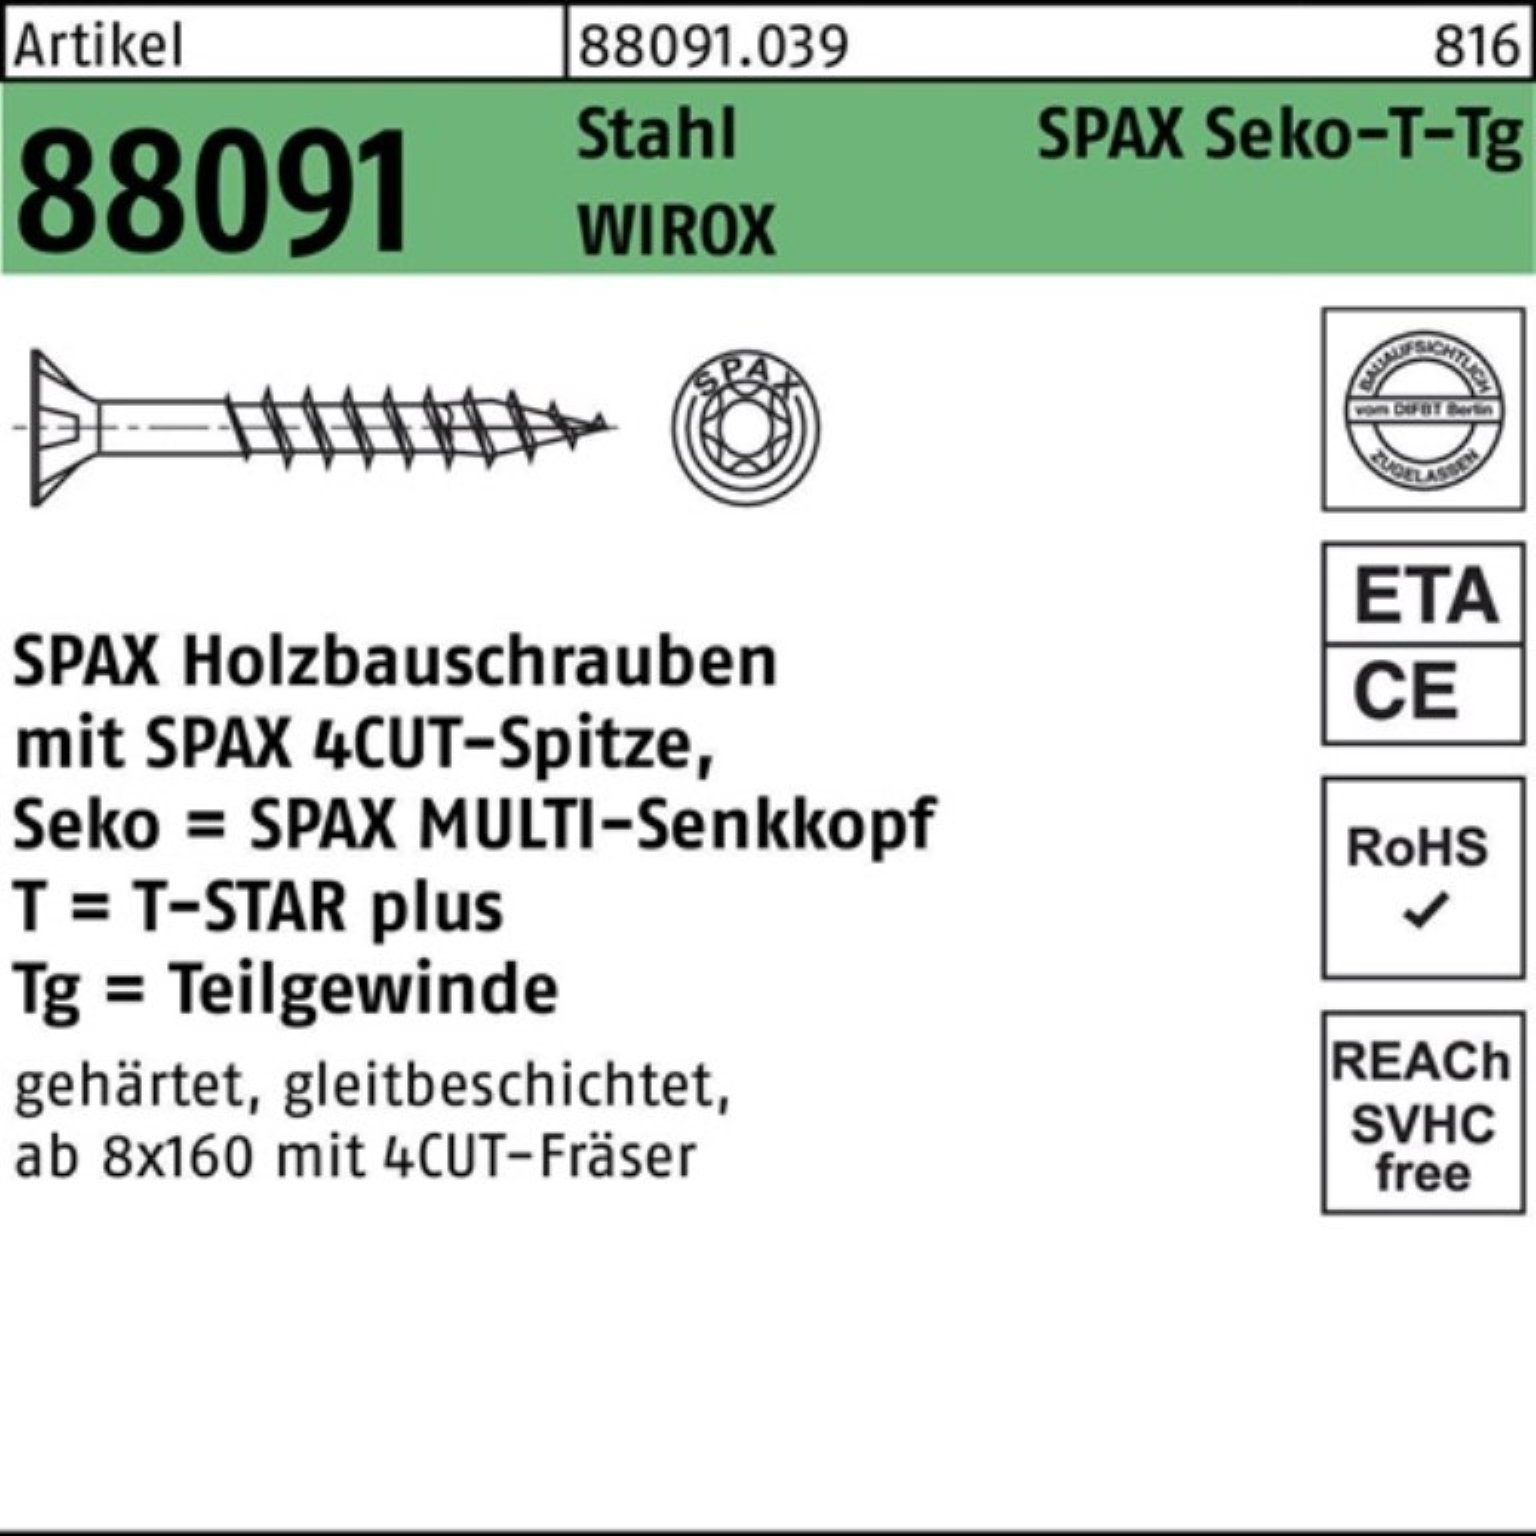 Angebot besitzen SPAX Schraube 5 TG 360/80-T40 100er Stahl Schraube SEKO/T-STAR R WIROX Pack 8x 88091